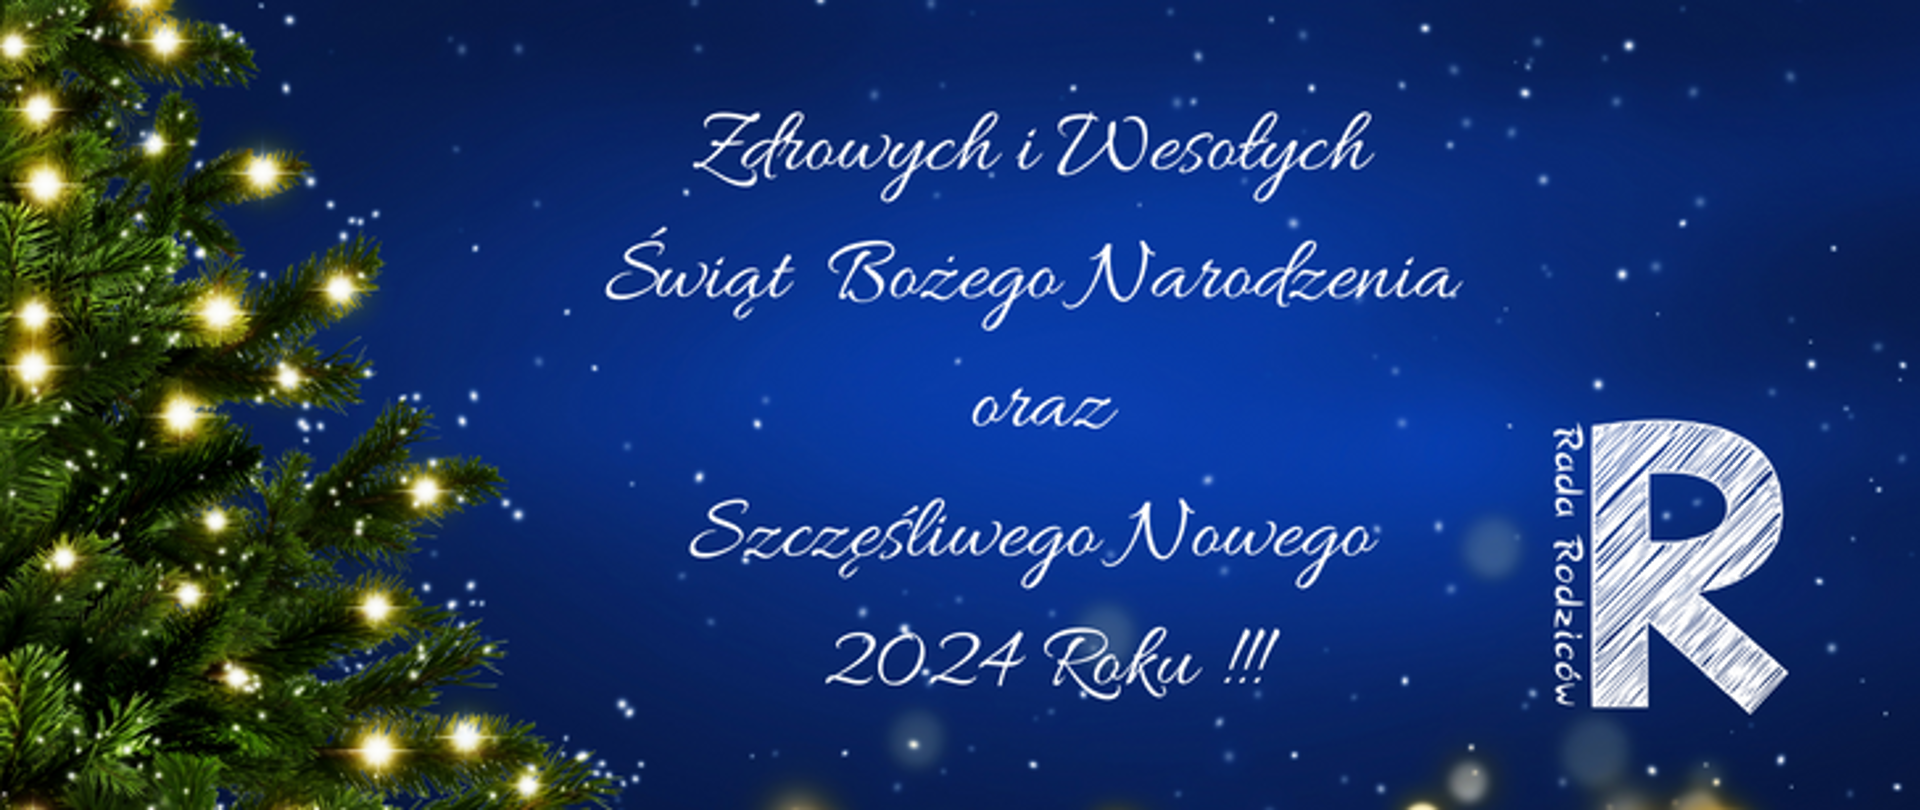 Na granatowym tle fragment zielonej choinki oraz napis: Zdrowych i Wesołych Świąt Bożego Narodzenia oraz Szczęśliwego Nowego 2024 Roku !!!po prawej stronie logo Rady Rodziców